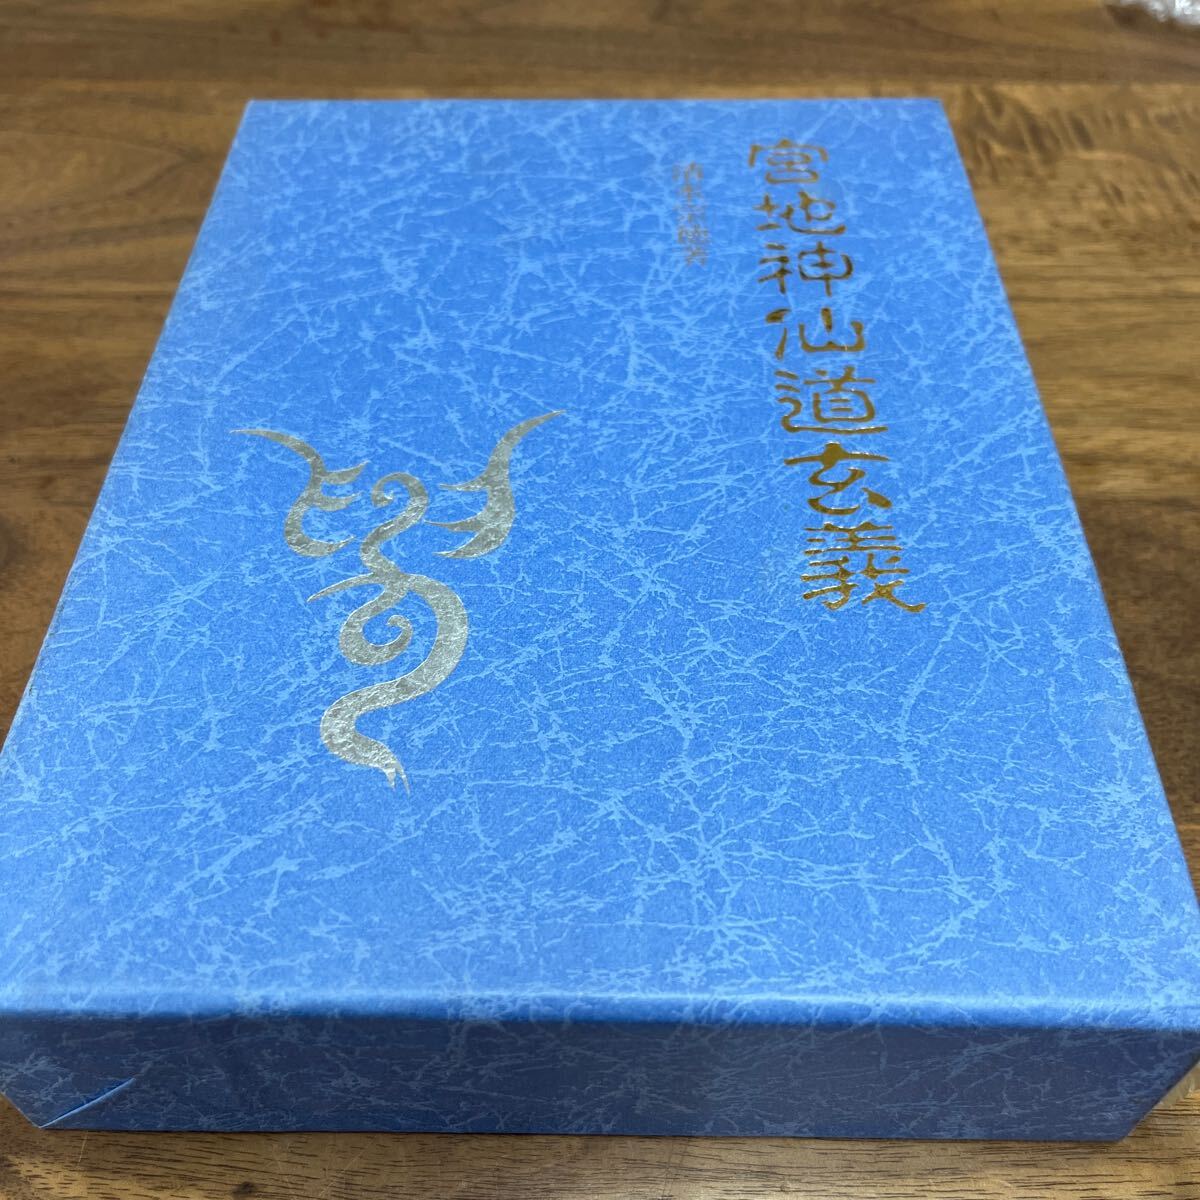 M-1128*60 размер . земля бог . дорога .. Shimizu . добродетель Omiya .. Hachiman книжный магазин эпоха Heisei 6 год три версия выпуск обычная цена 13,000 иен 